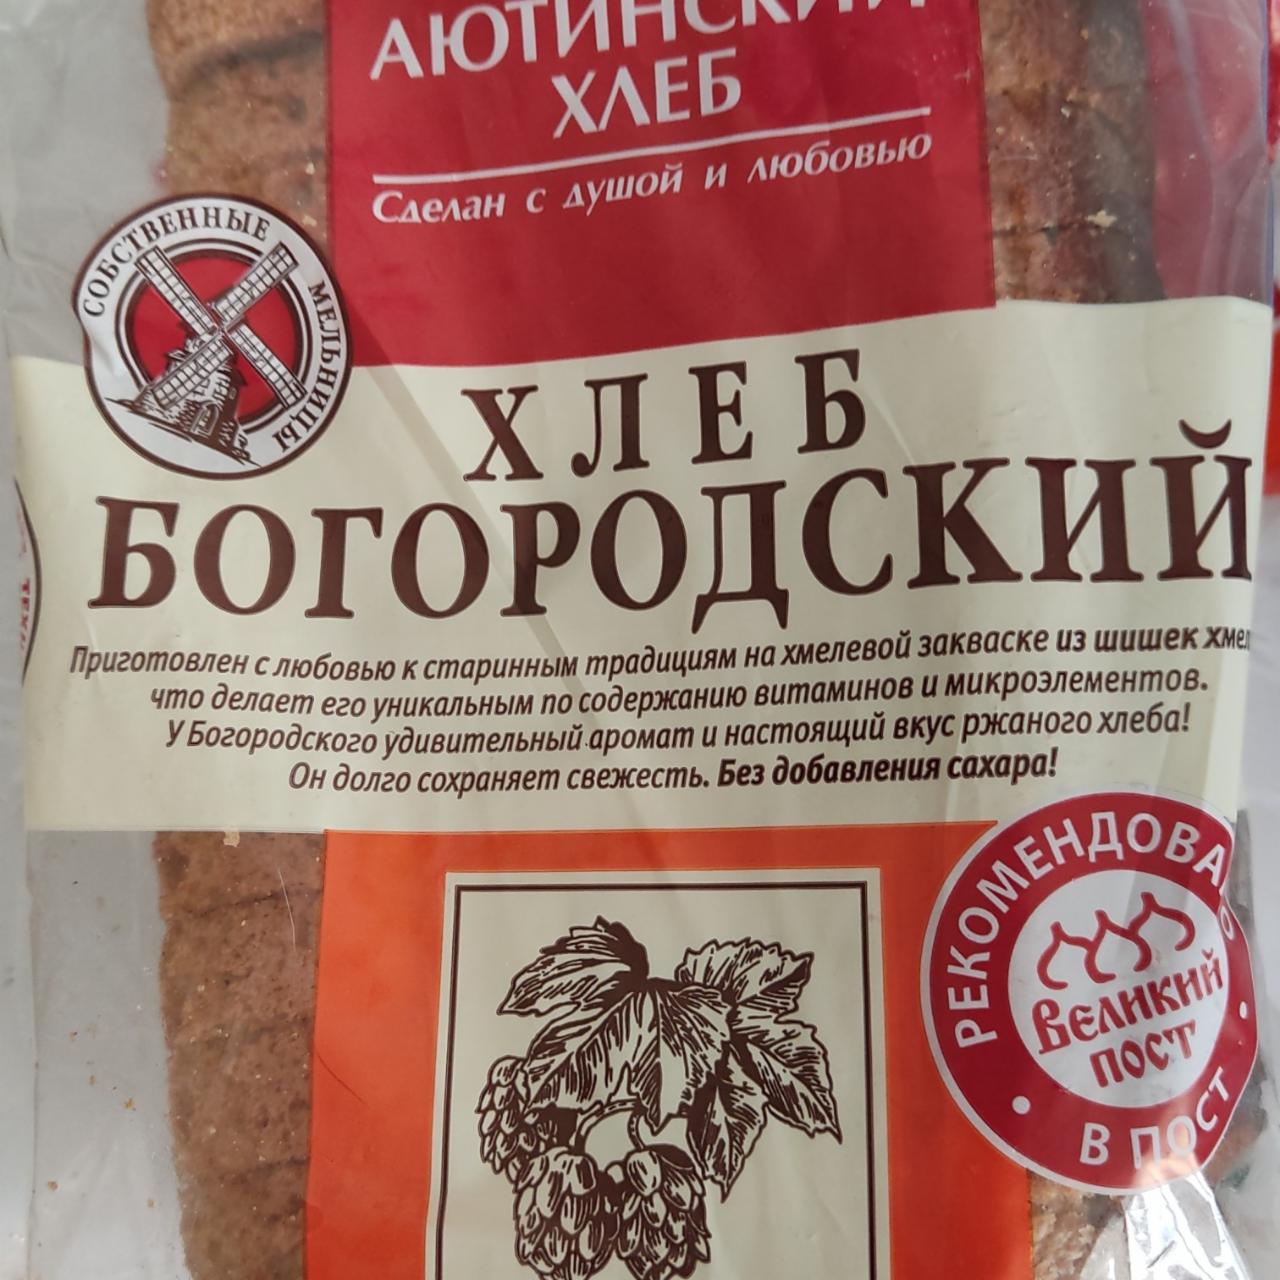 Фото - Хлеб богородский ржано-пшеничный Аютинский хлеб